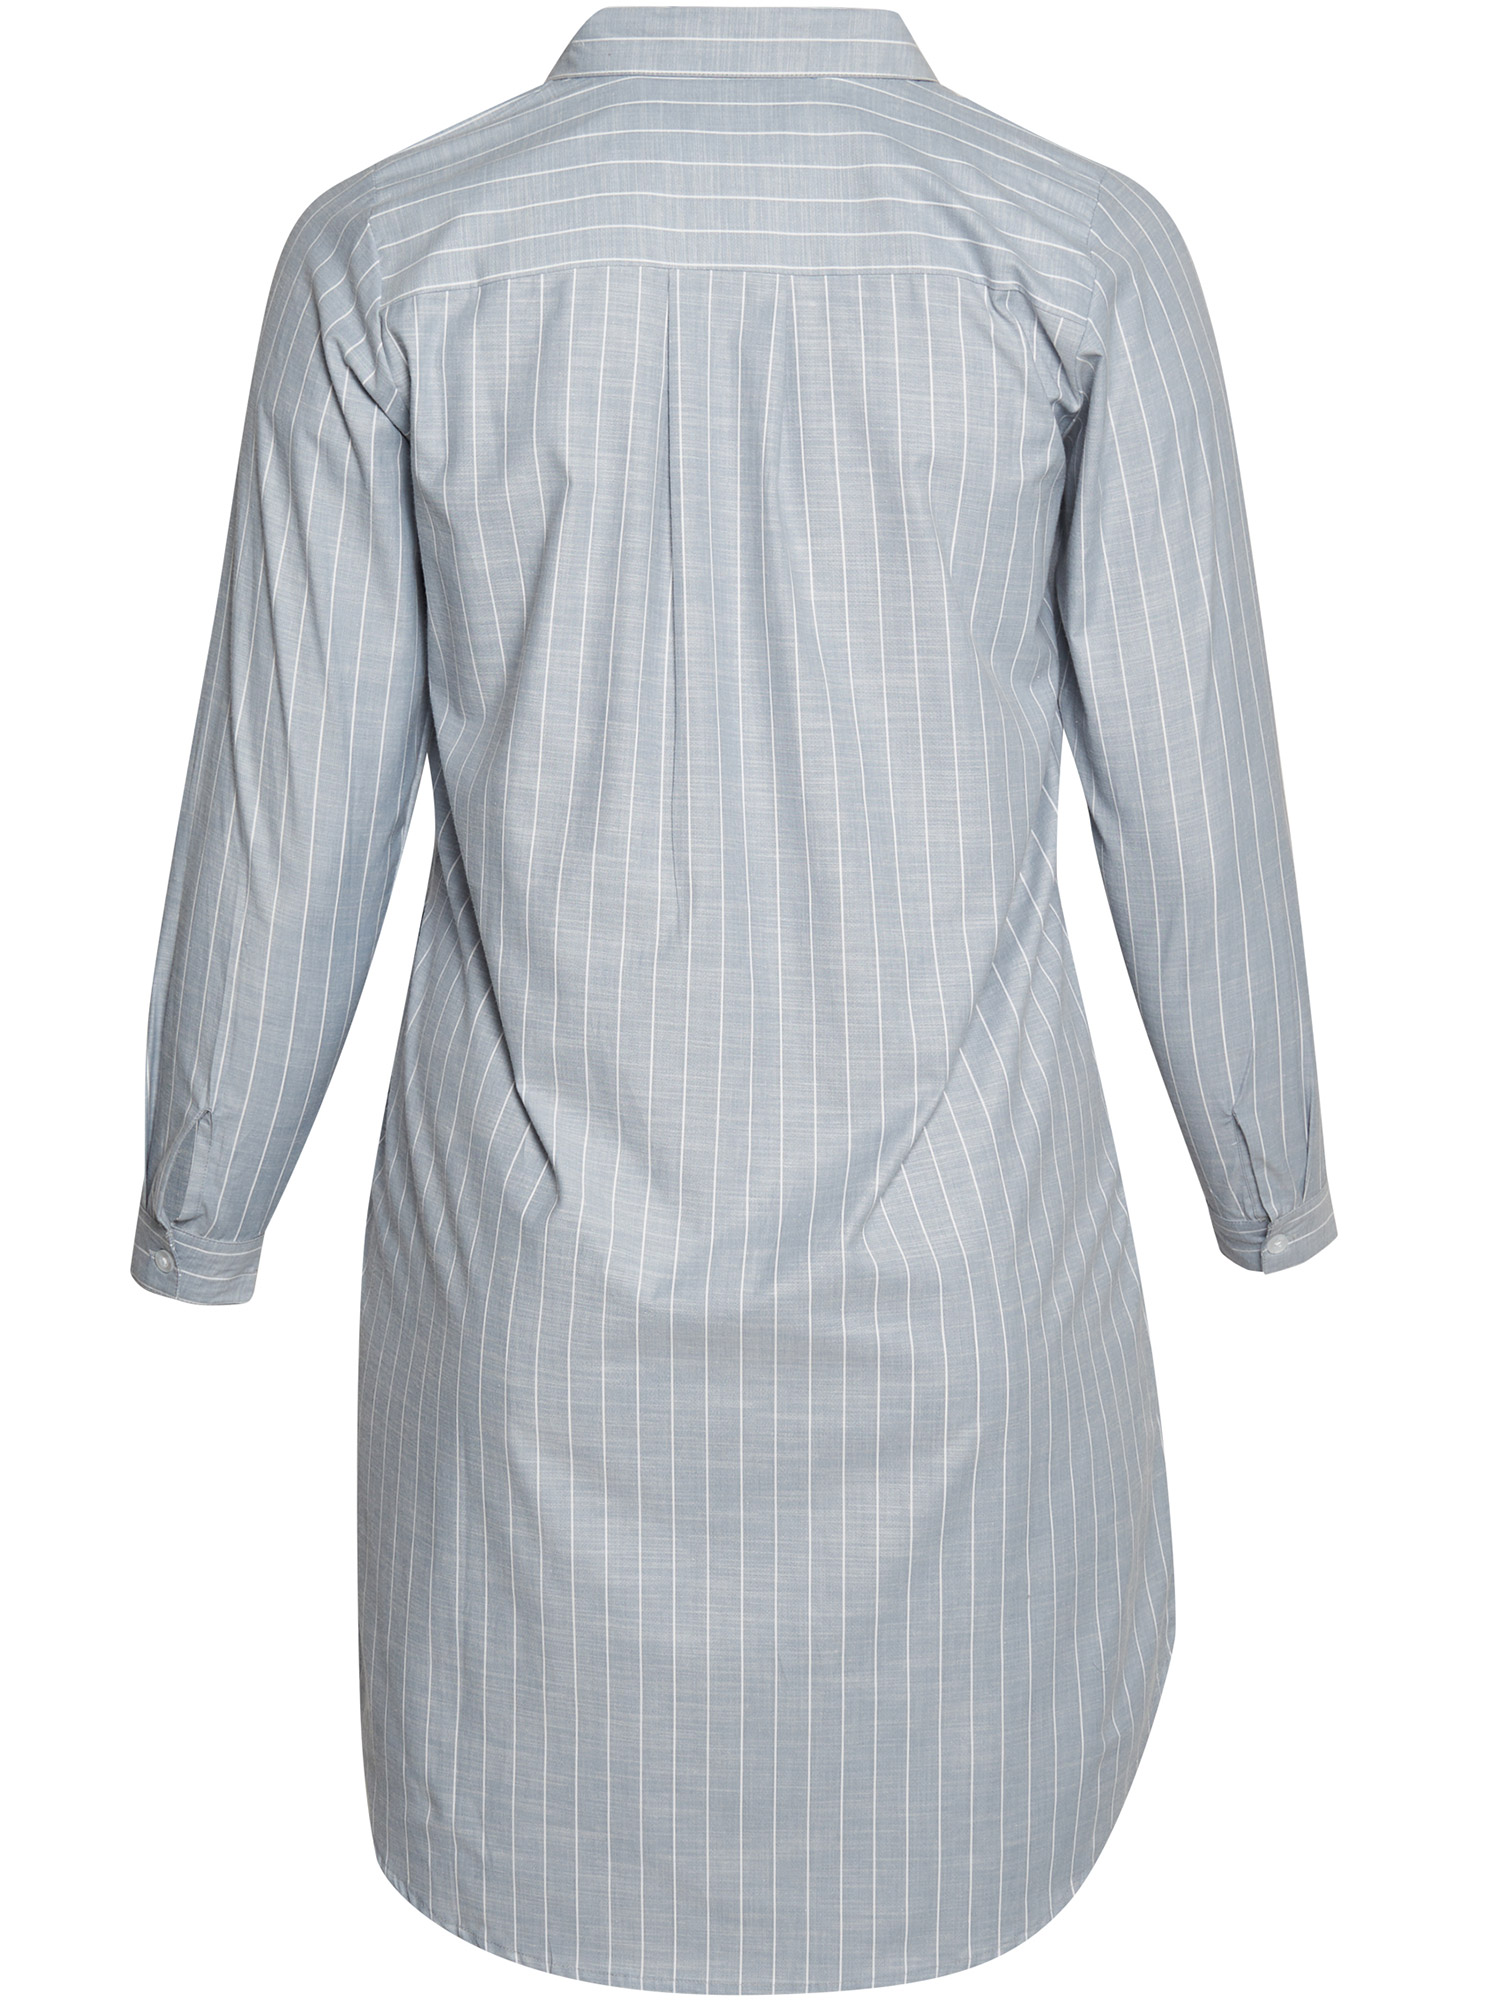 Norwalk - Lyseblå skjorte med striper fra Aprico